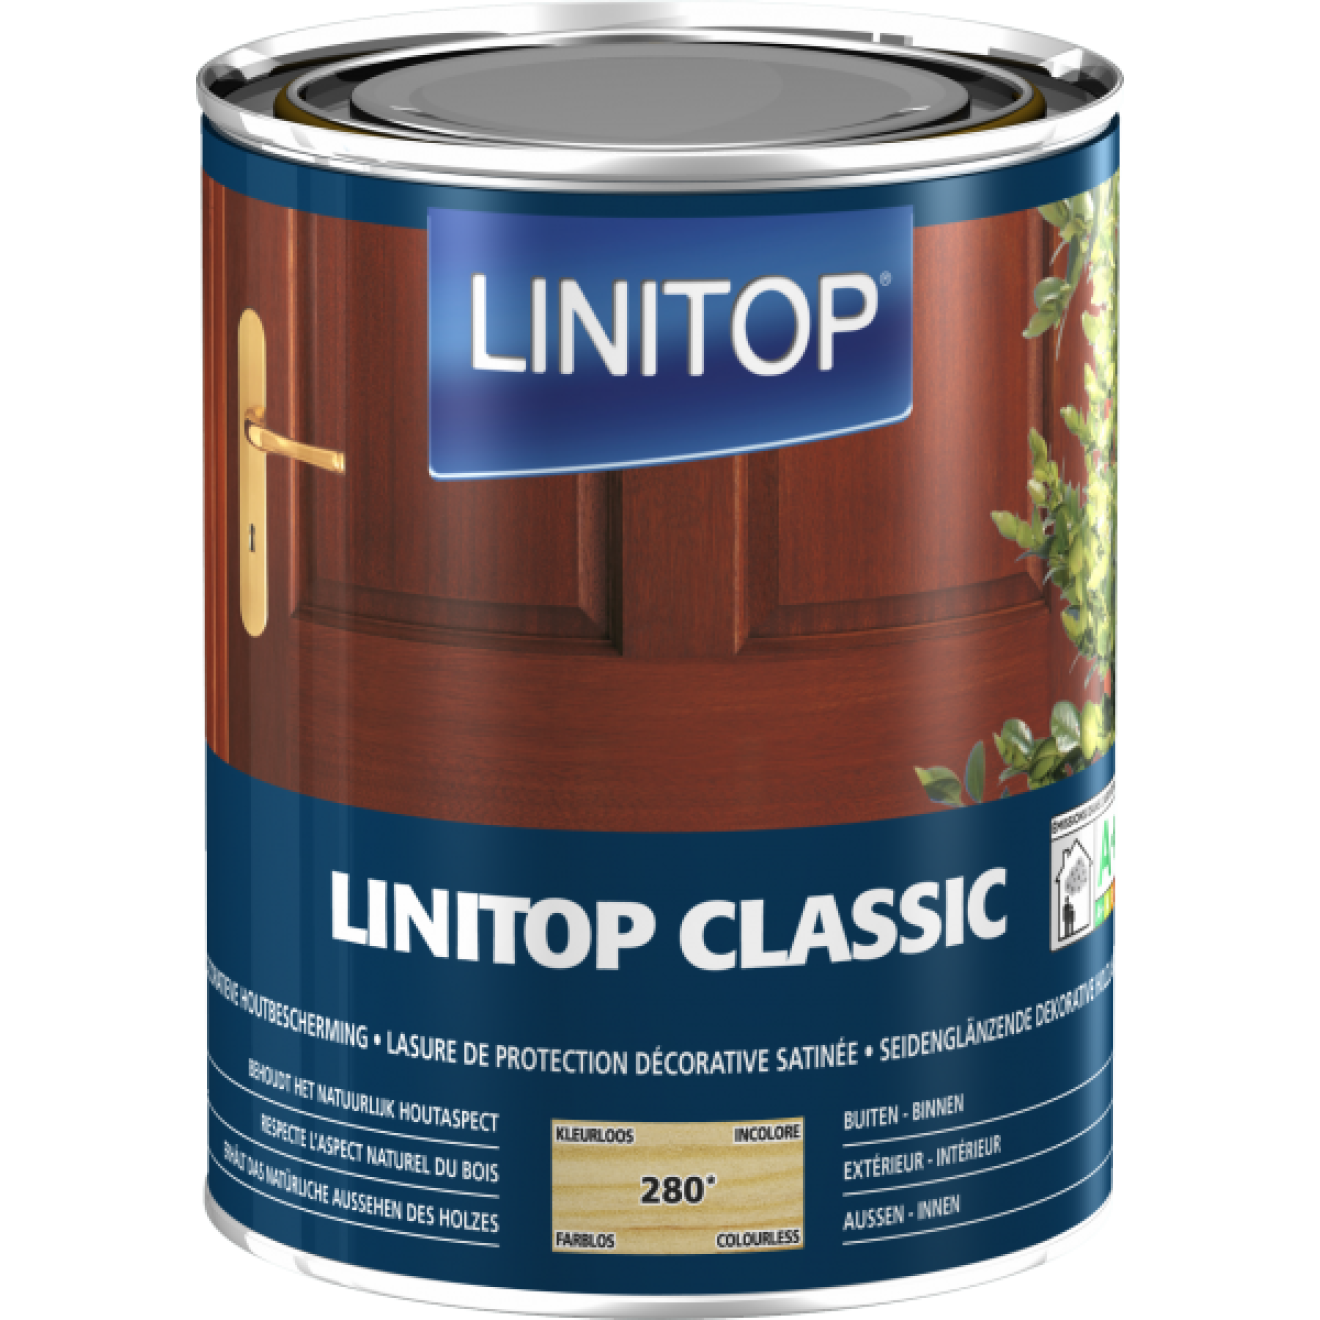 Linitop CLASSIC